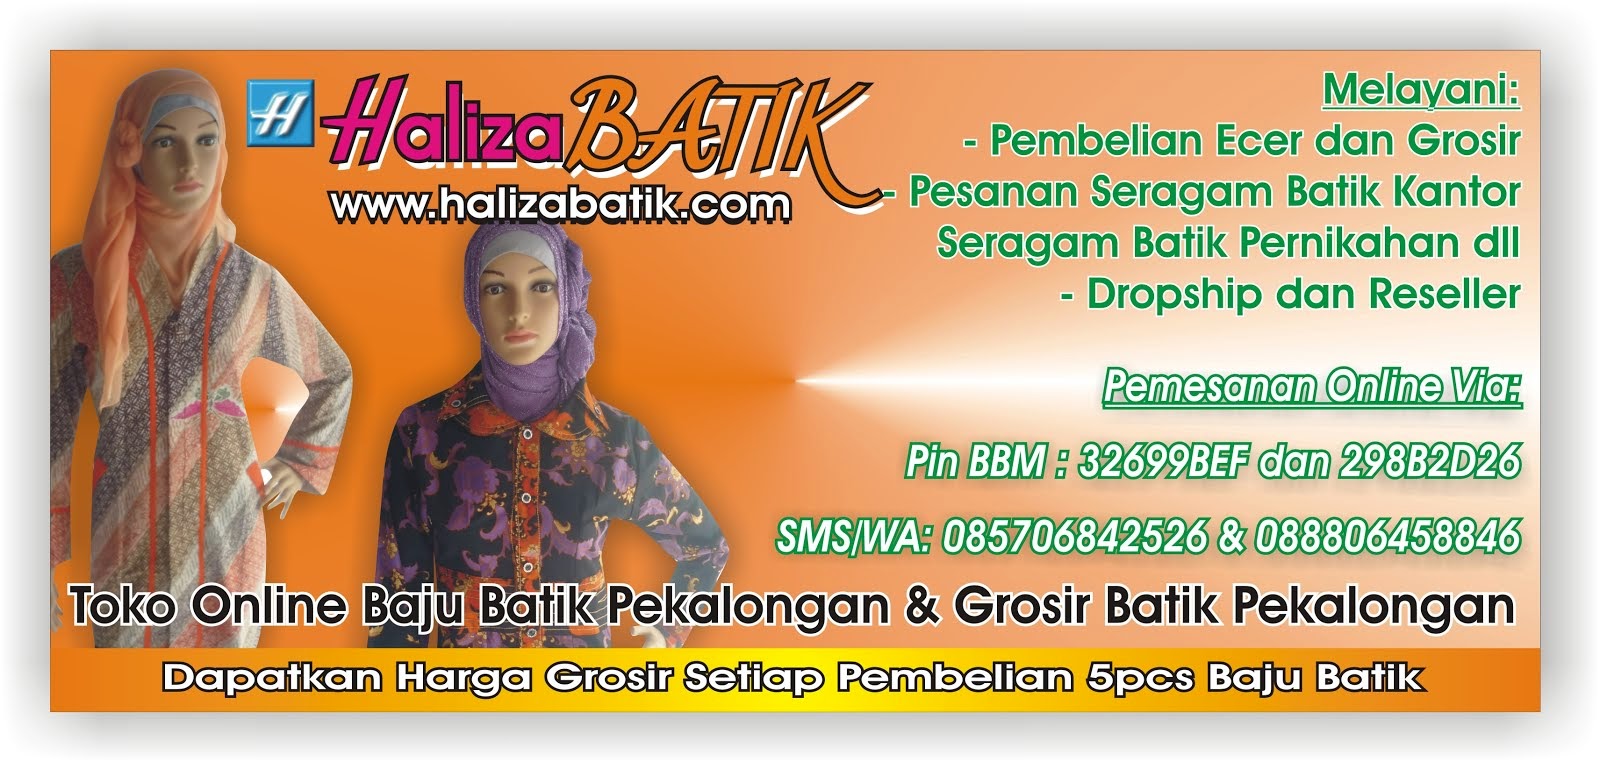 Grosir Batik Pekalongan, Toko Batik Online